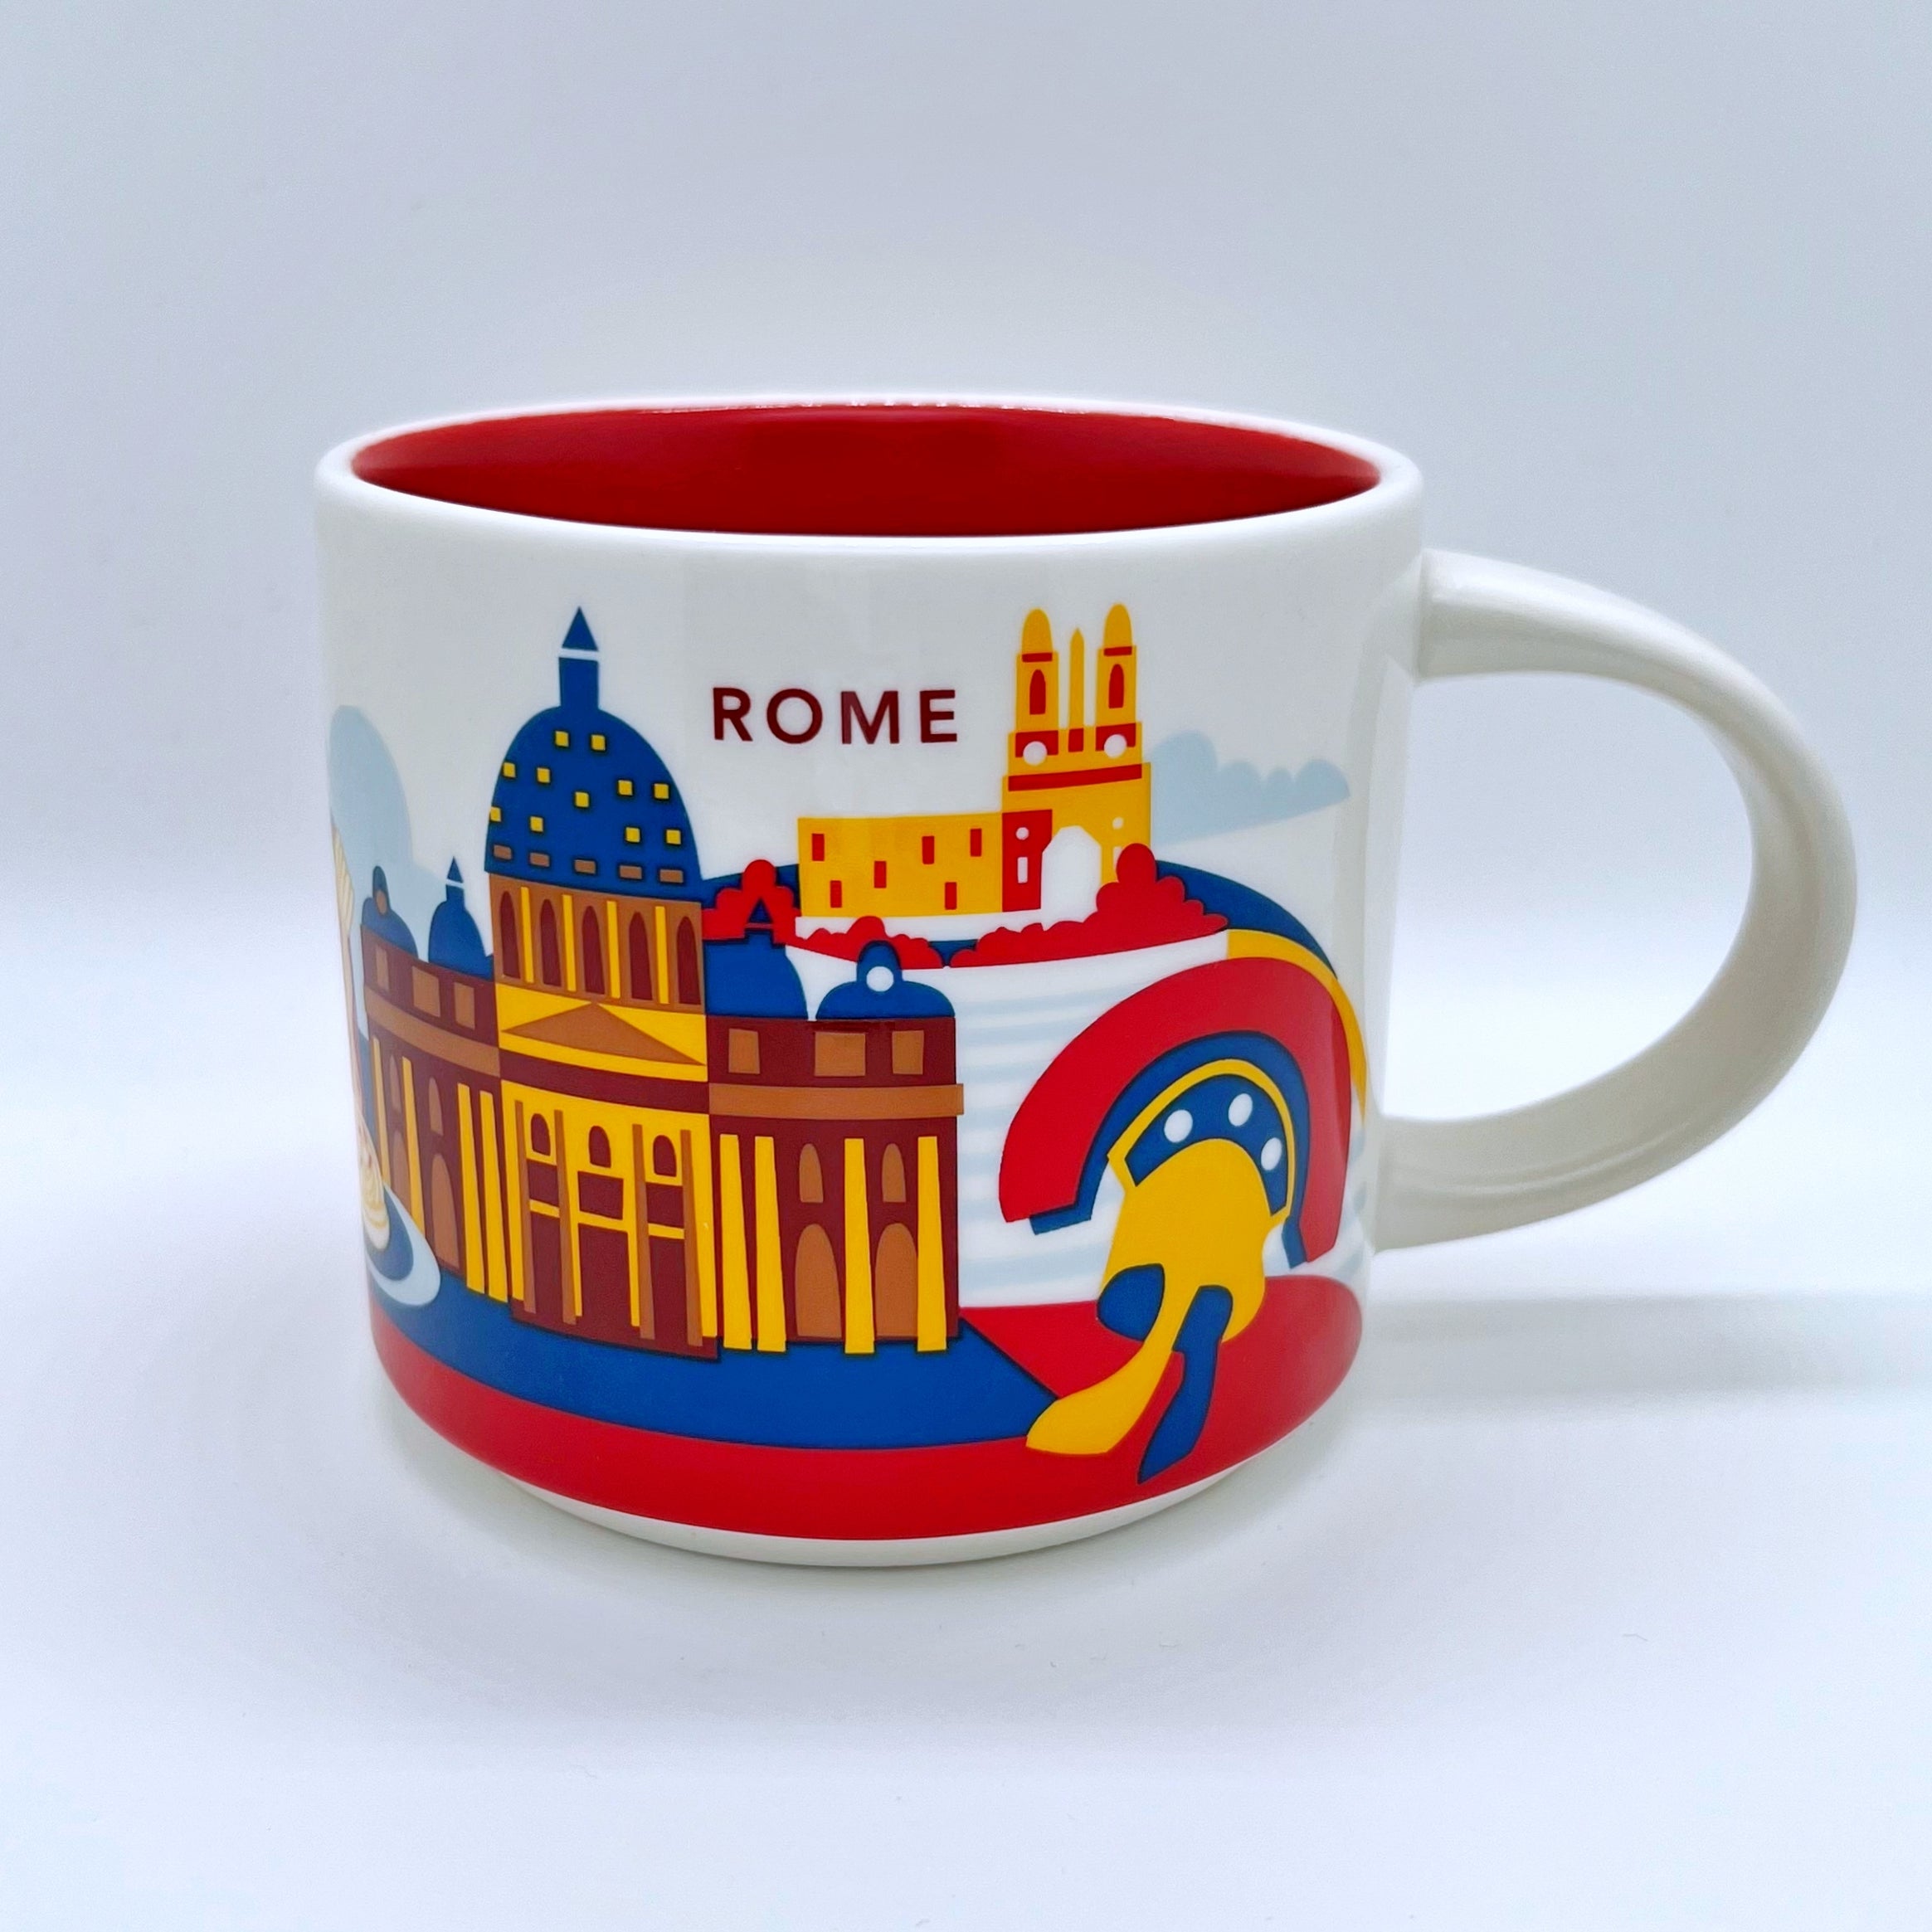 Kaffee Tee oder Cappuccino Tasse von Starbucks mit gemalten Bildern aus der Stadt Rom